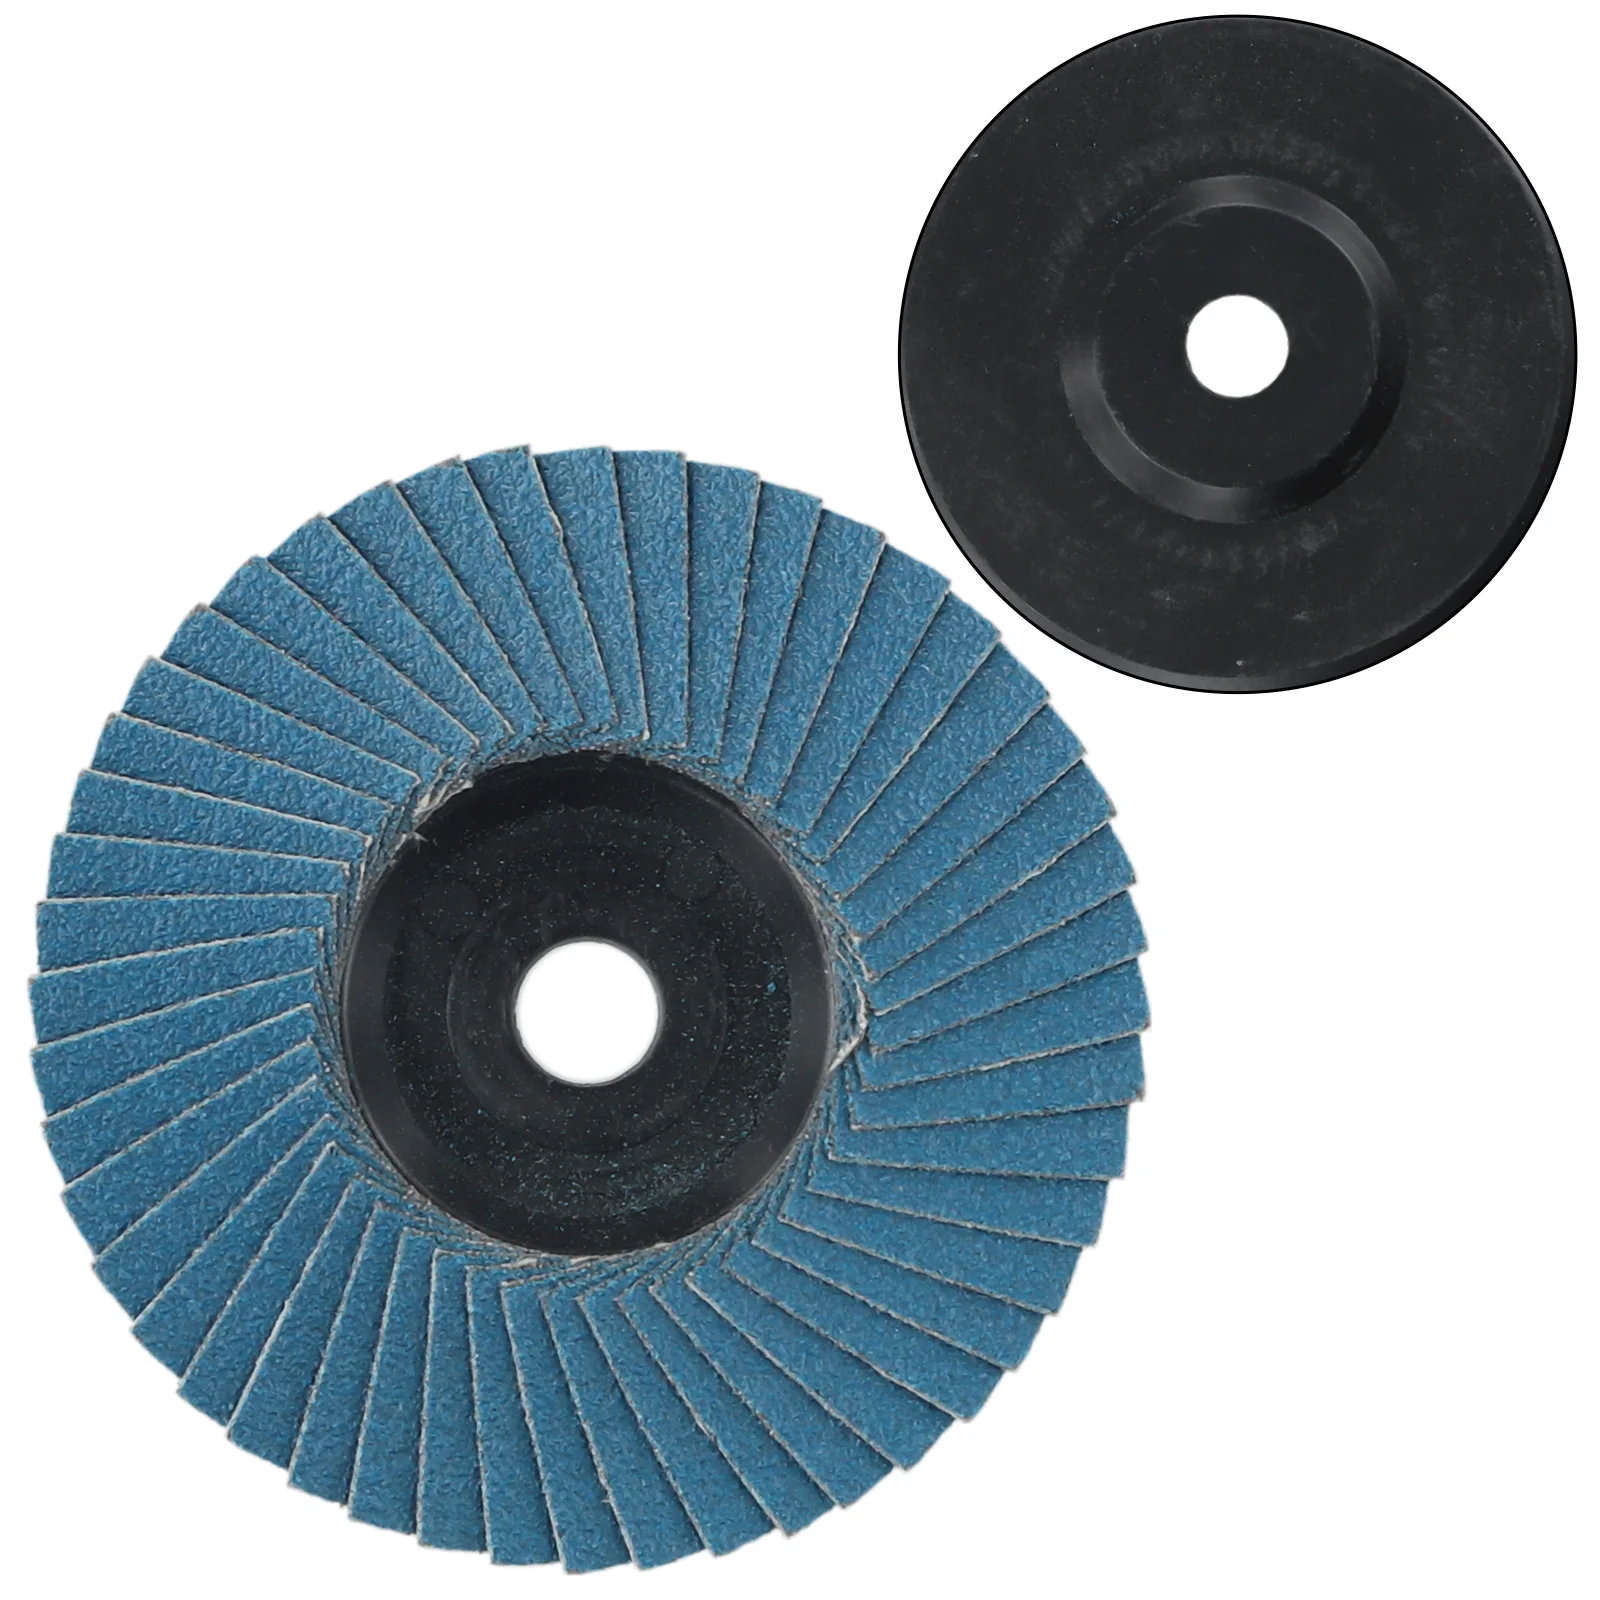 

Power Tool Grinding Wheel Blue Flap Discs Grinding Wheels 3 Inch 3pcs 75mm Hard-wearing Metal Grind Sanding Discs